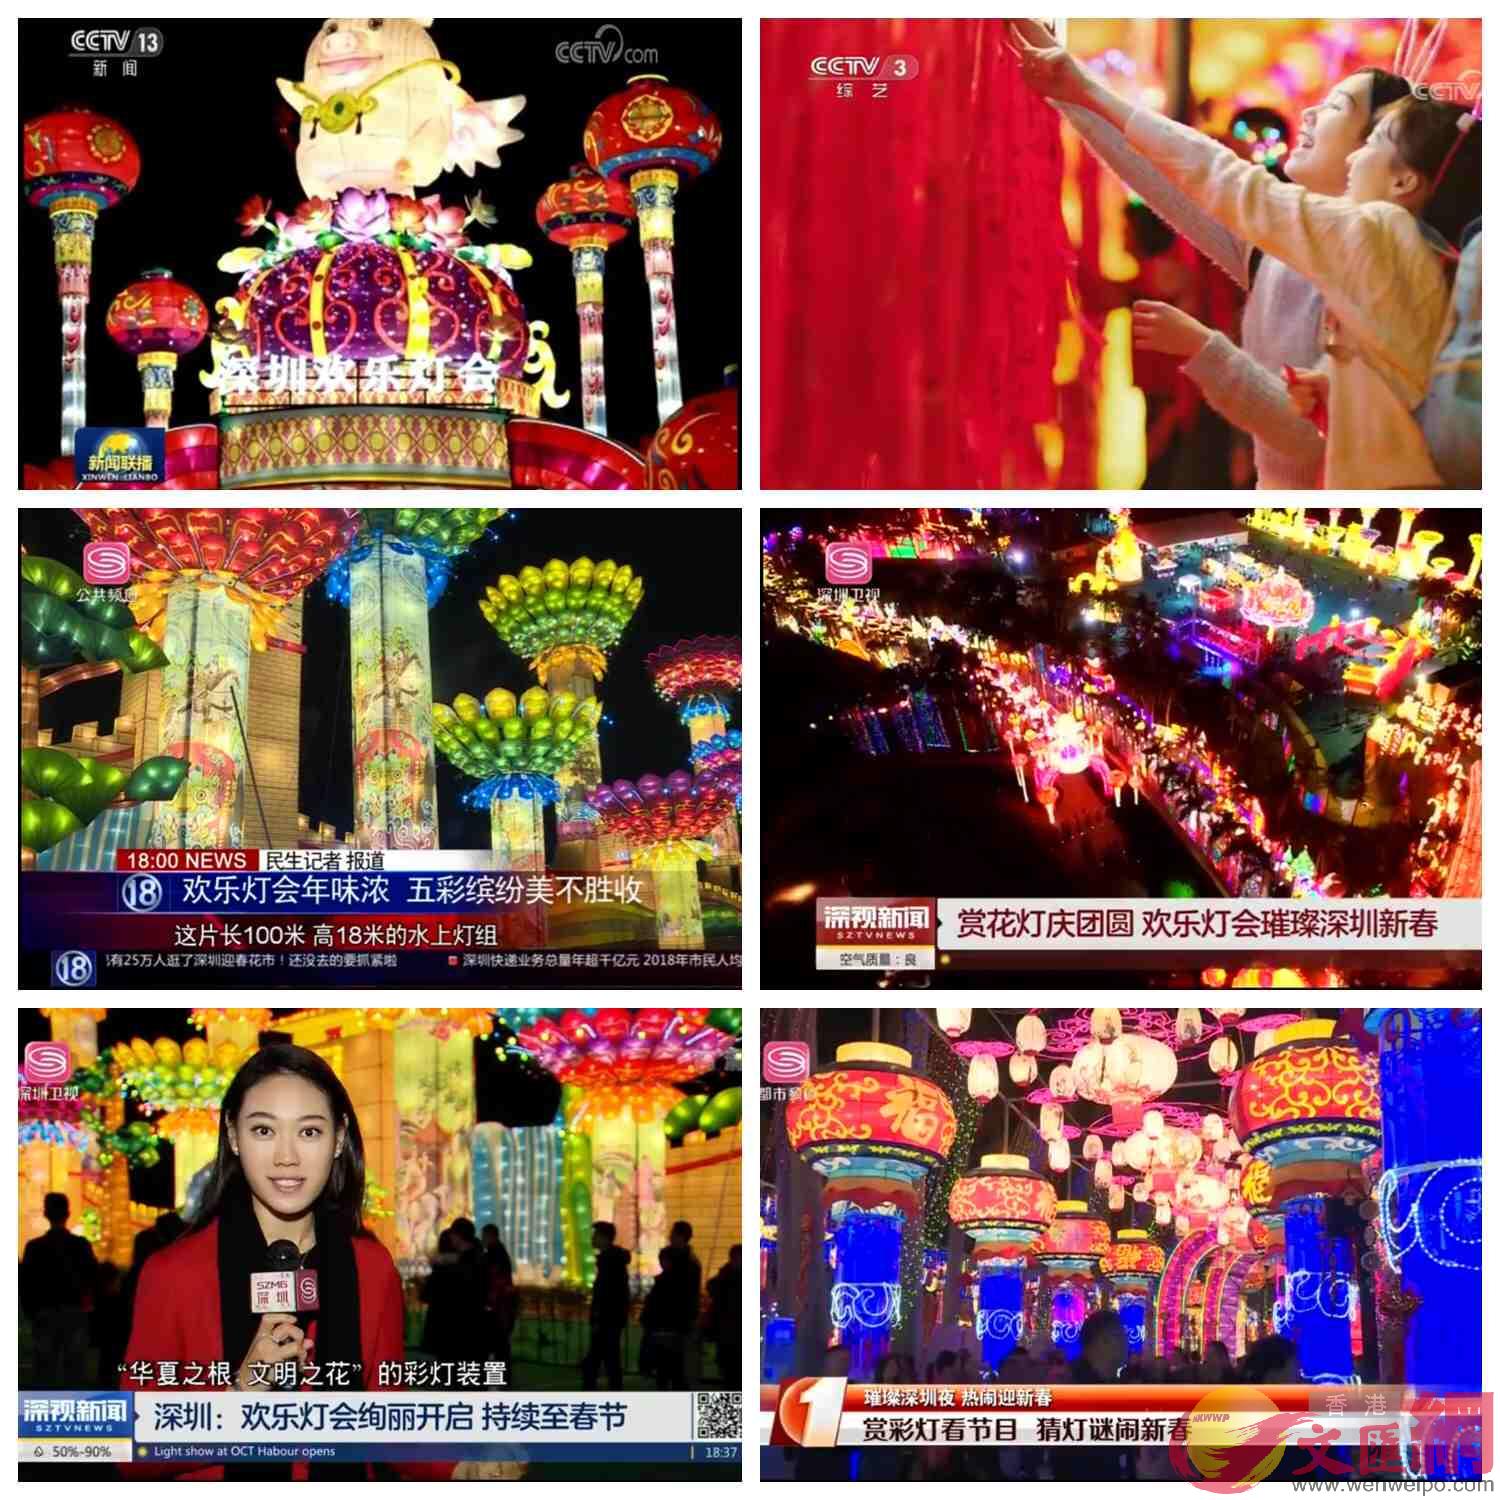 「深圳歡樂燈會」也出現在央視多個王牌欄目中(拼圖：記者 熊君慧)